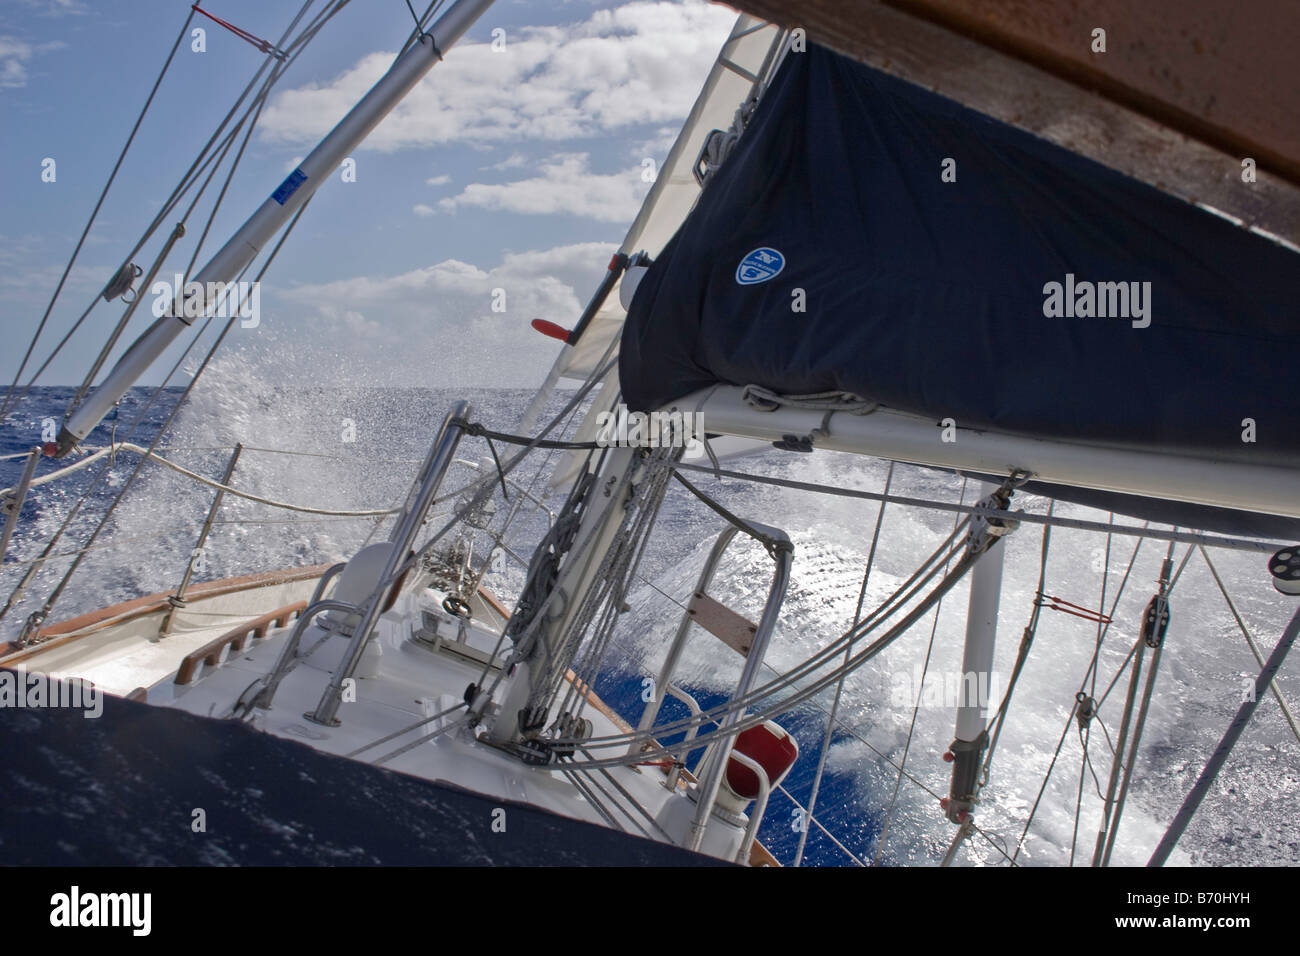 El arco se bloquea en una onda en un velero 34 Crealock haciendo un pasaje desde mediados de diciembre nos Costa Atlántica al Caribe Foto de stock